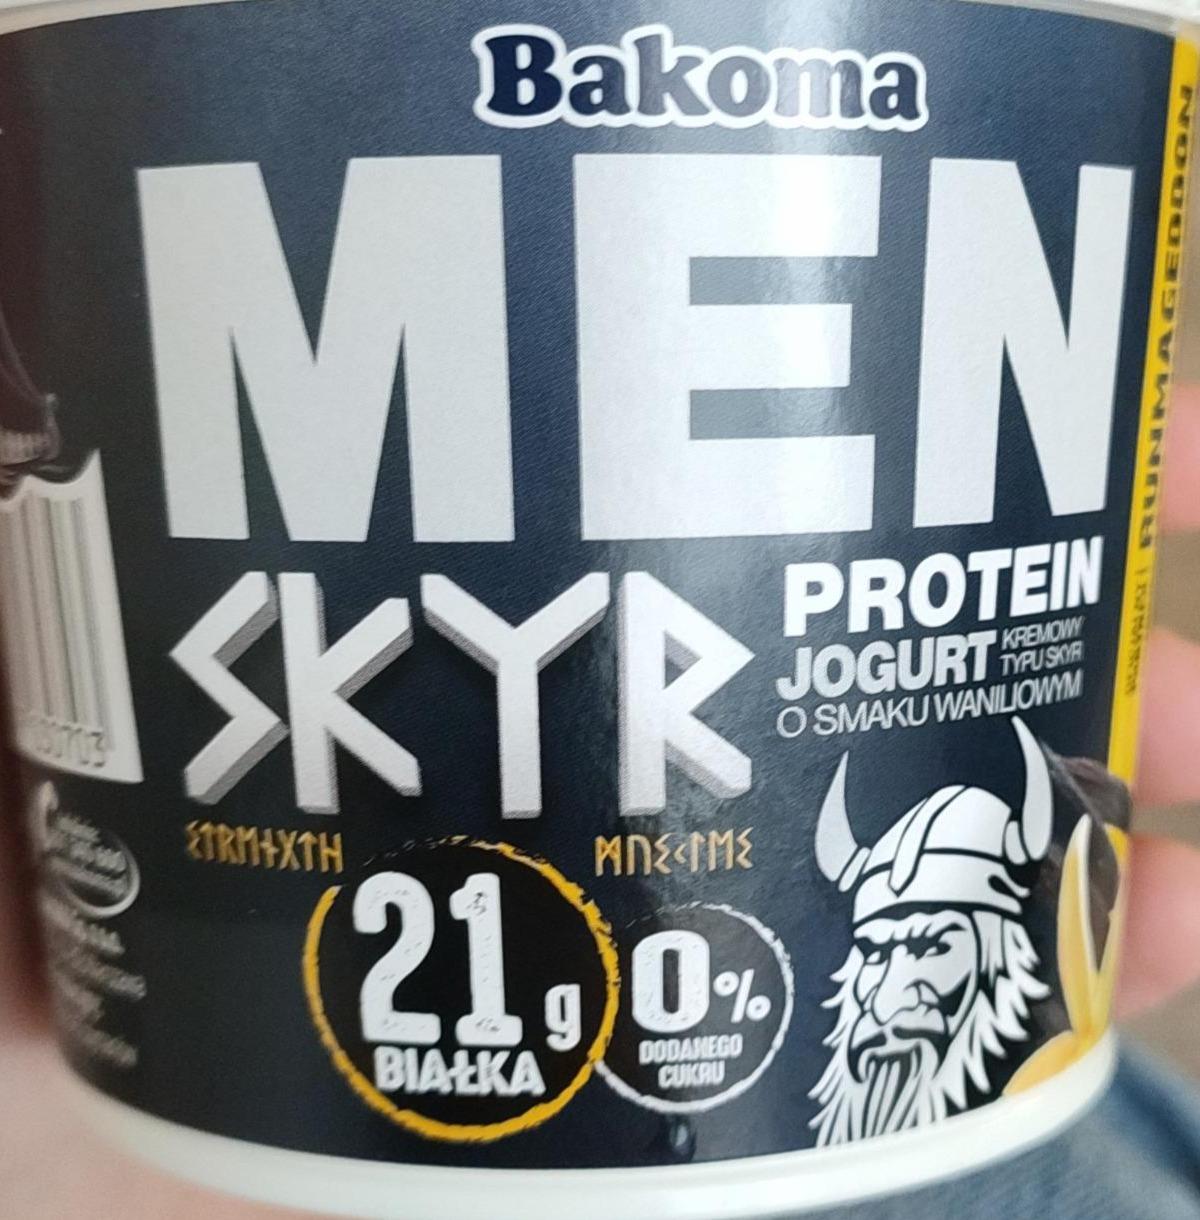 Фото - Men Skyr protein jogurt o smaku waniliowym Bakoma